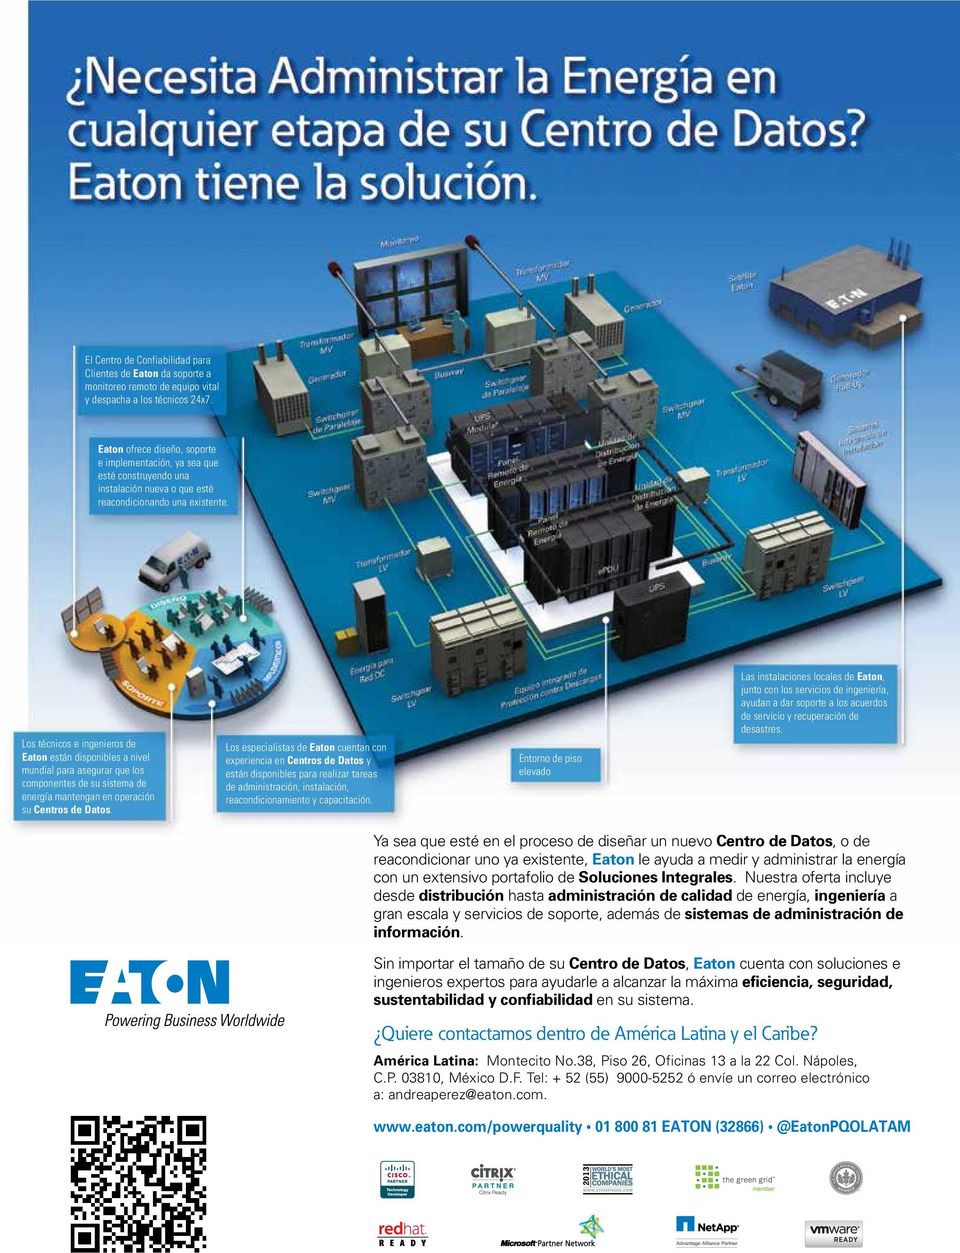 Los técnicos e ingenieros de Eaton están disponibles a nivel mundial para asegurar que los componentes de su sistema de energía mantengan en operación su Centros de Datos.